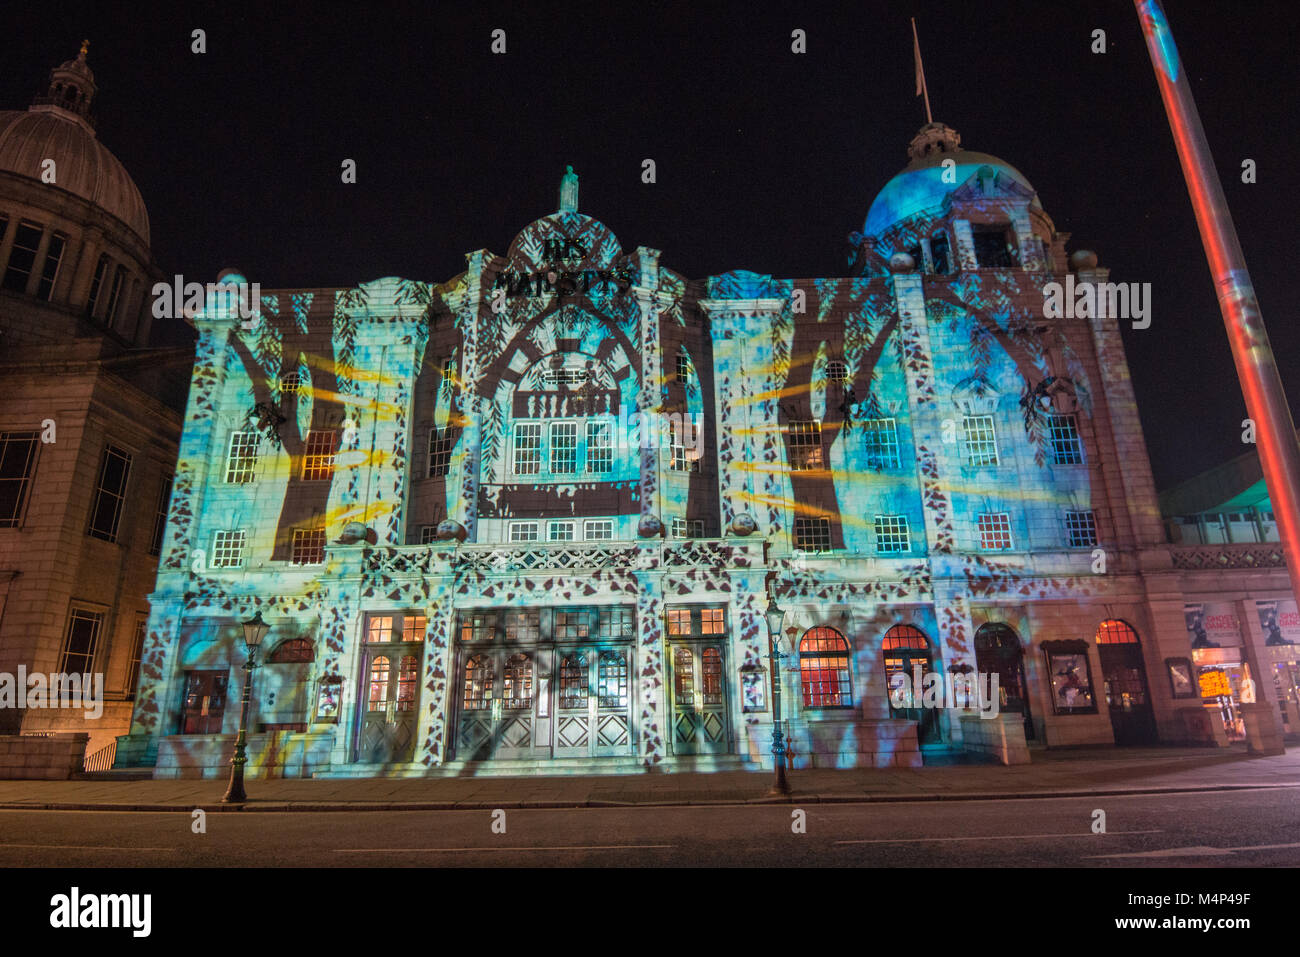 Spektren Licht Festival 2018 Projektion auf His Majesty's Theatre, Aberdeen, Schottland, UK Stockfoto